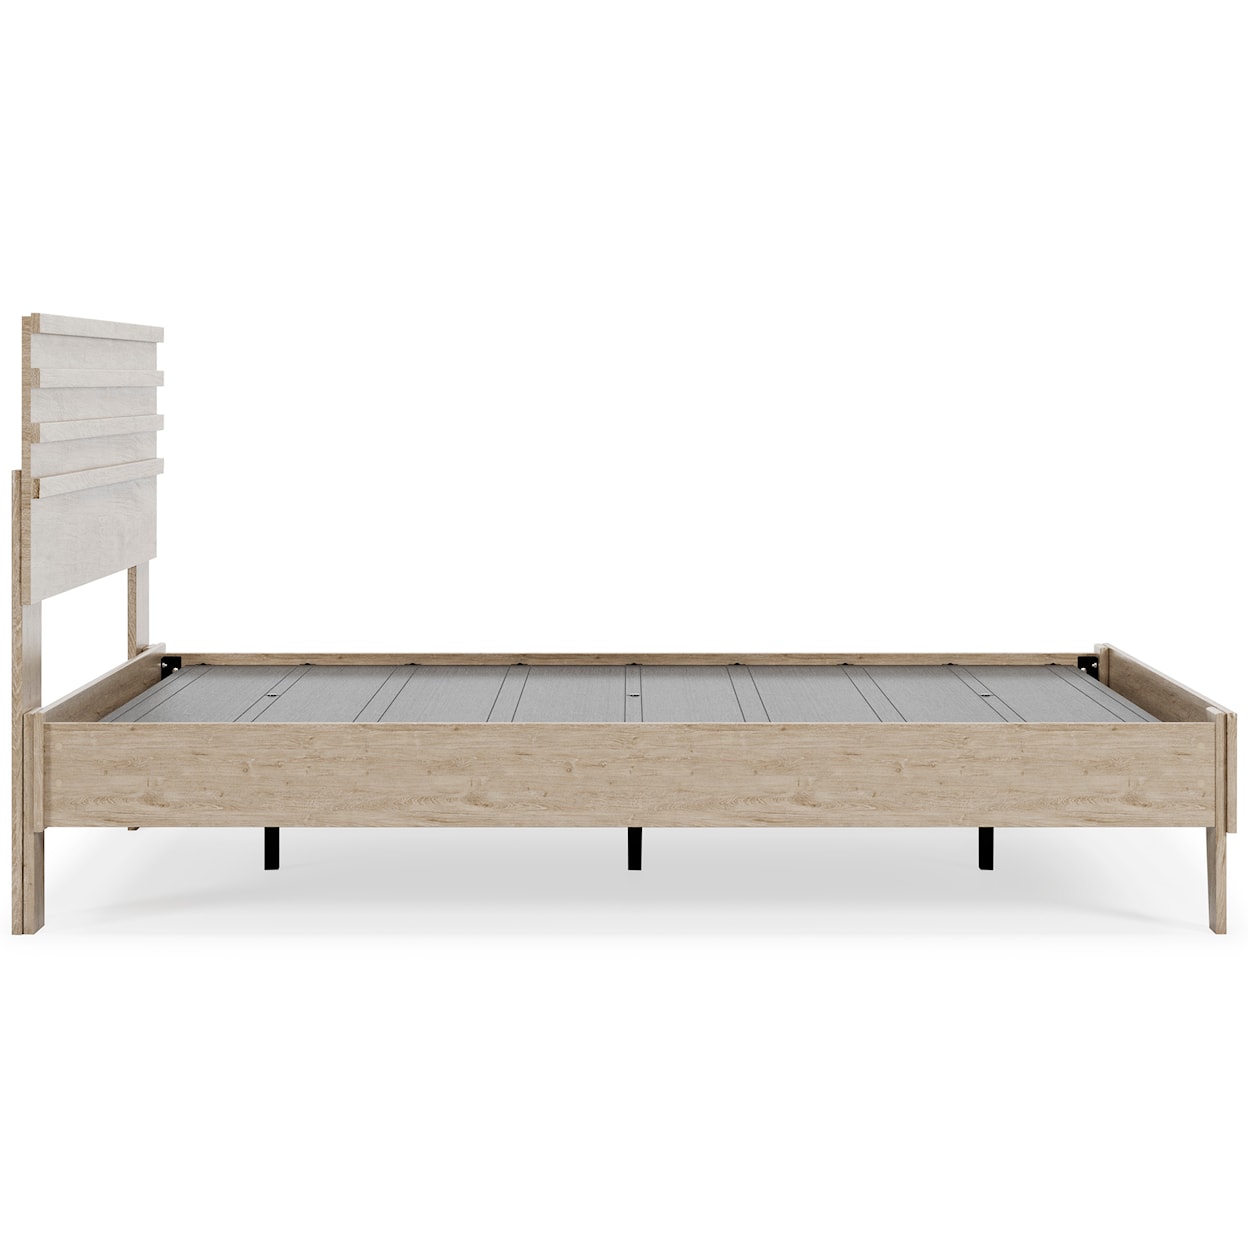 Ashley Furniture Signature Design Oliah Queen Panel Platform Bed